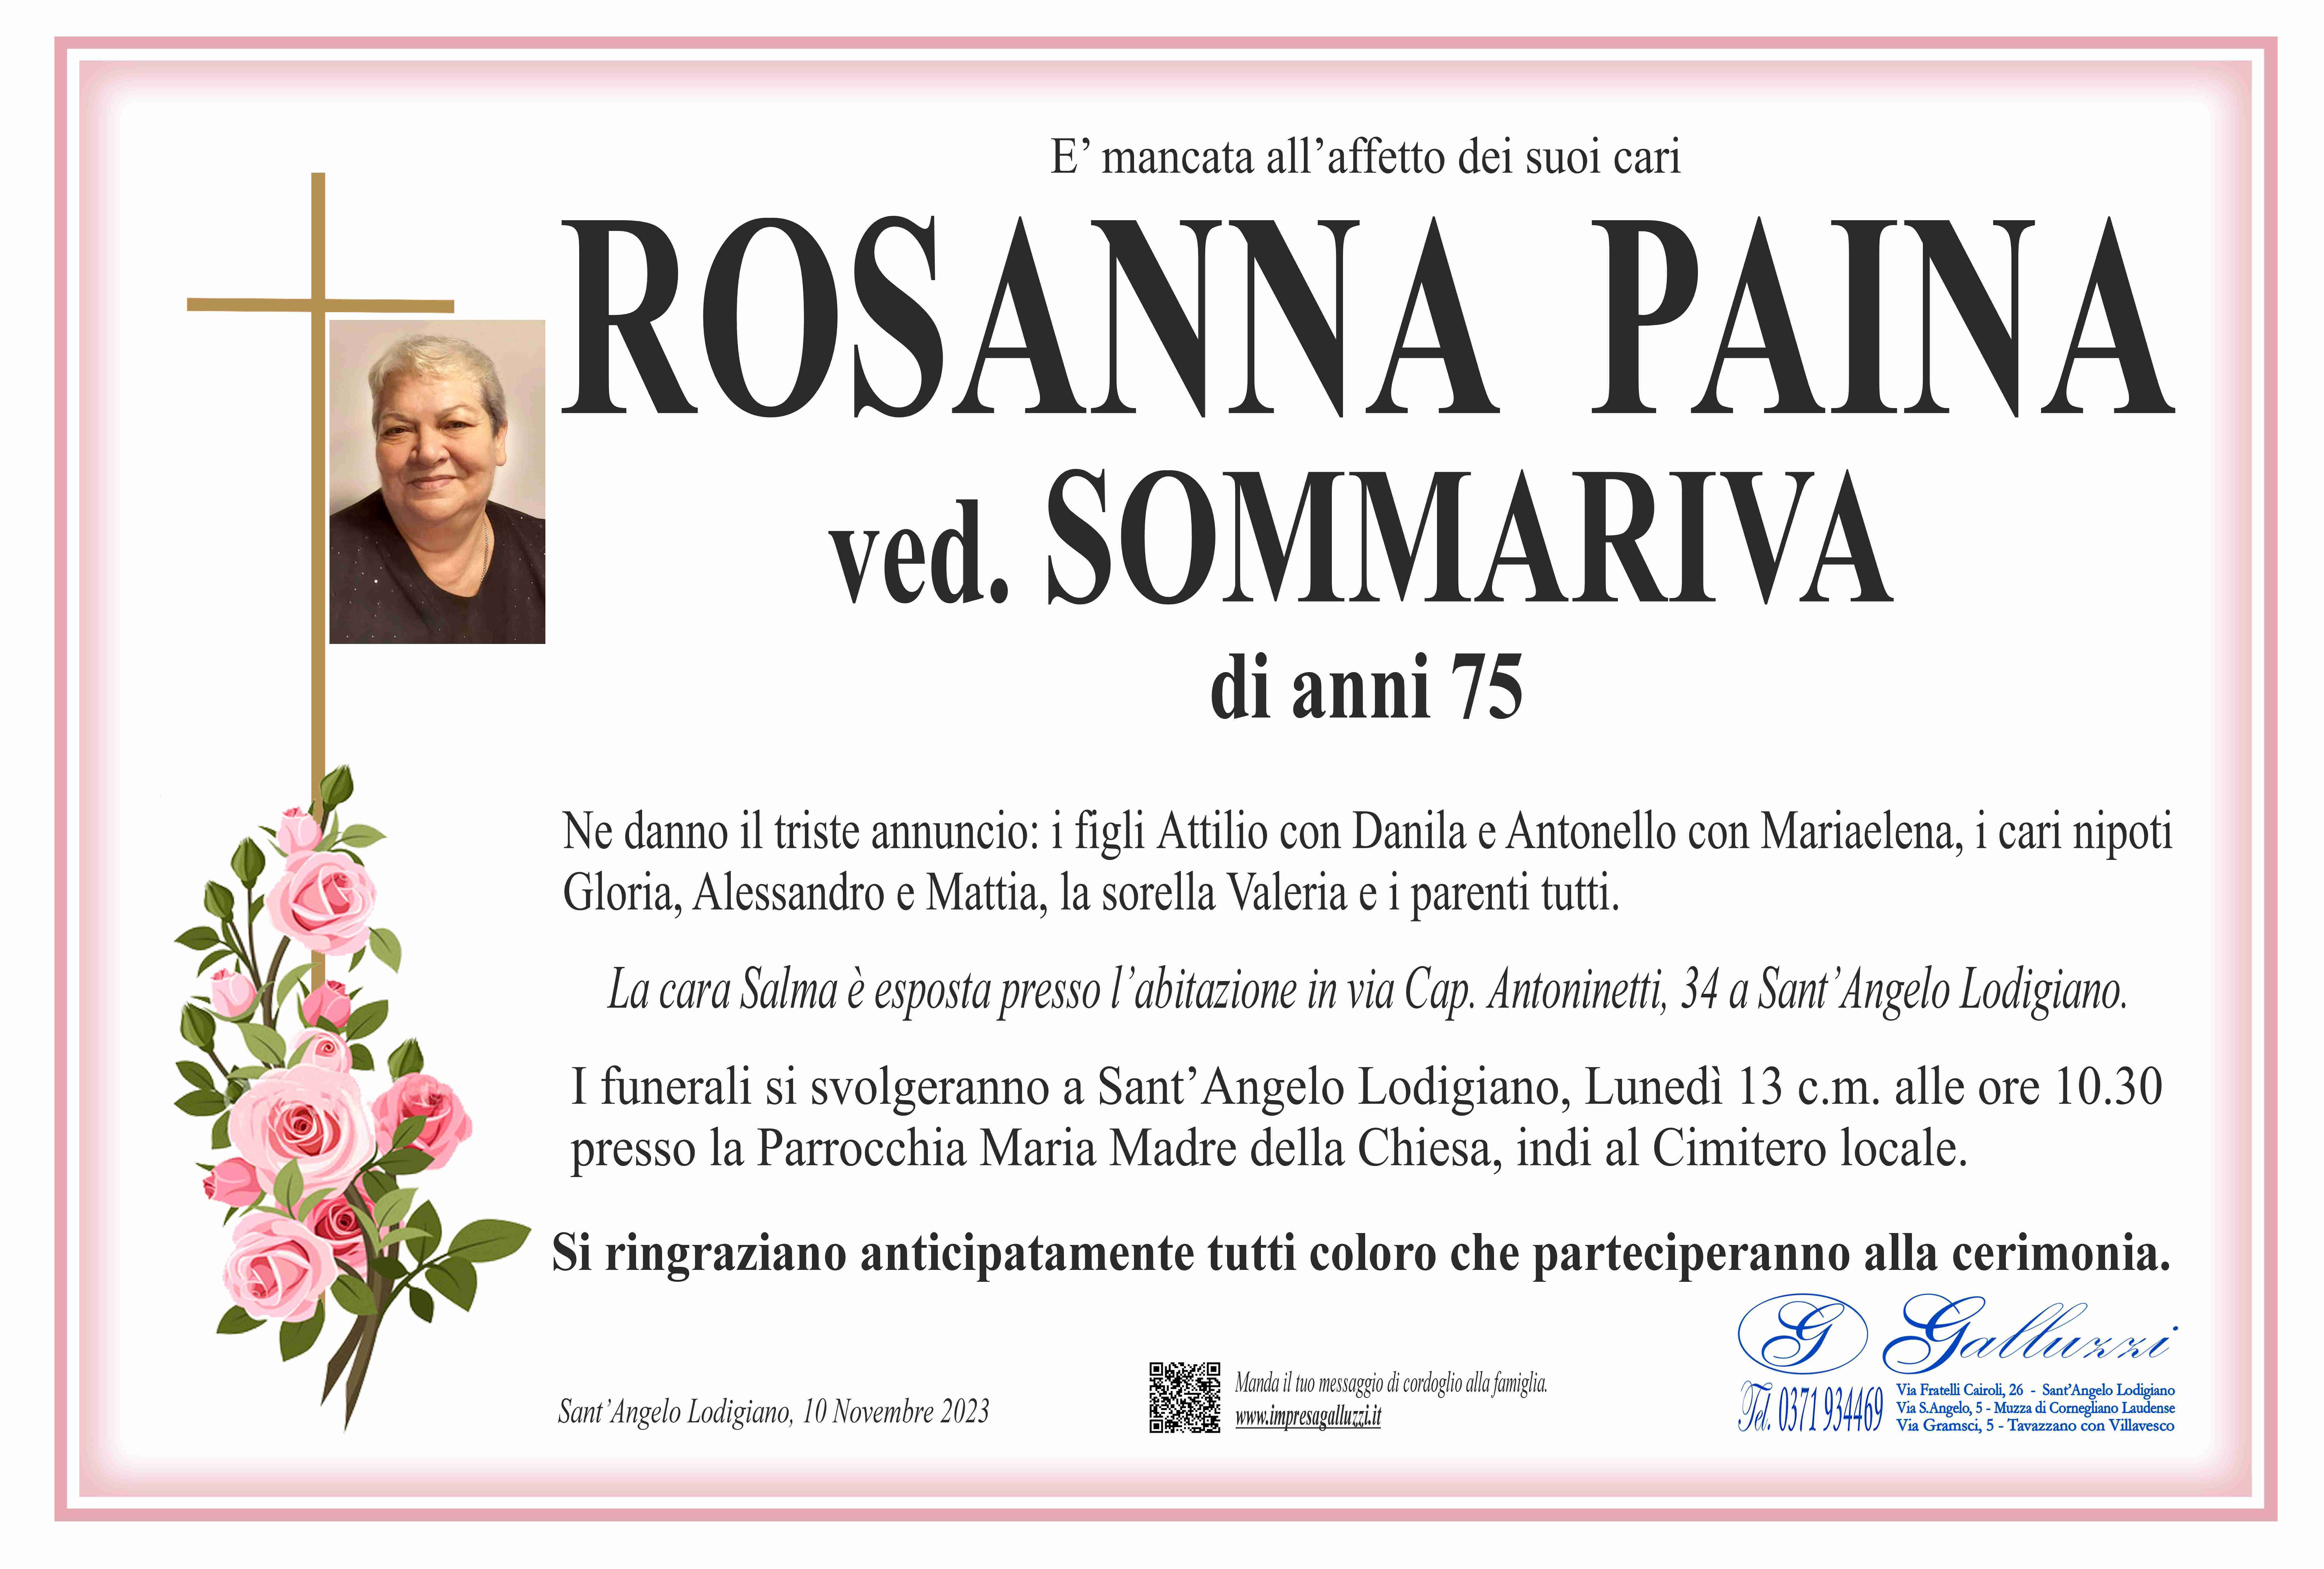 Rosanna Paina